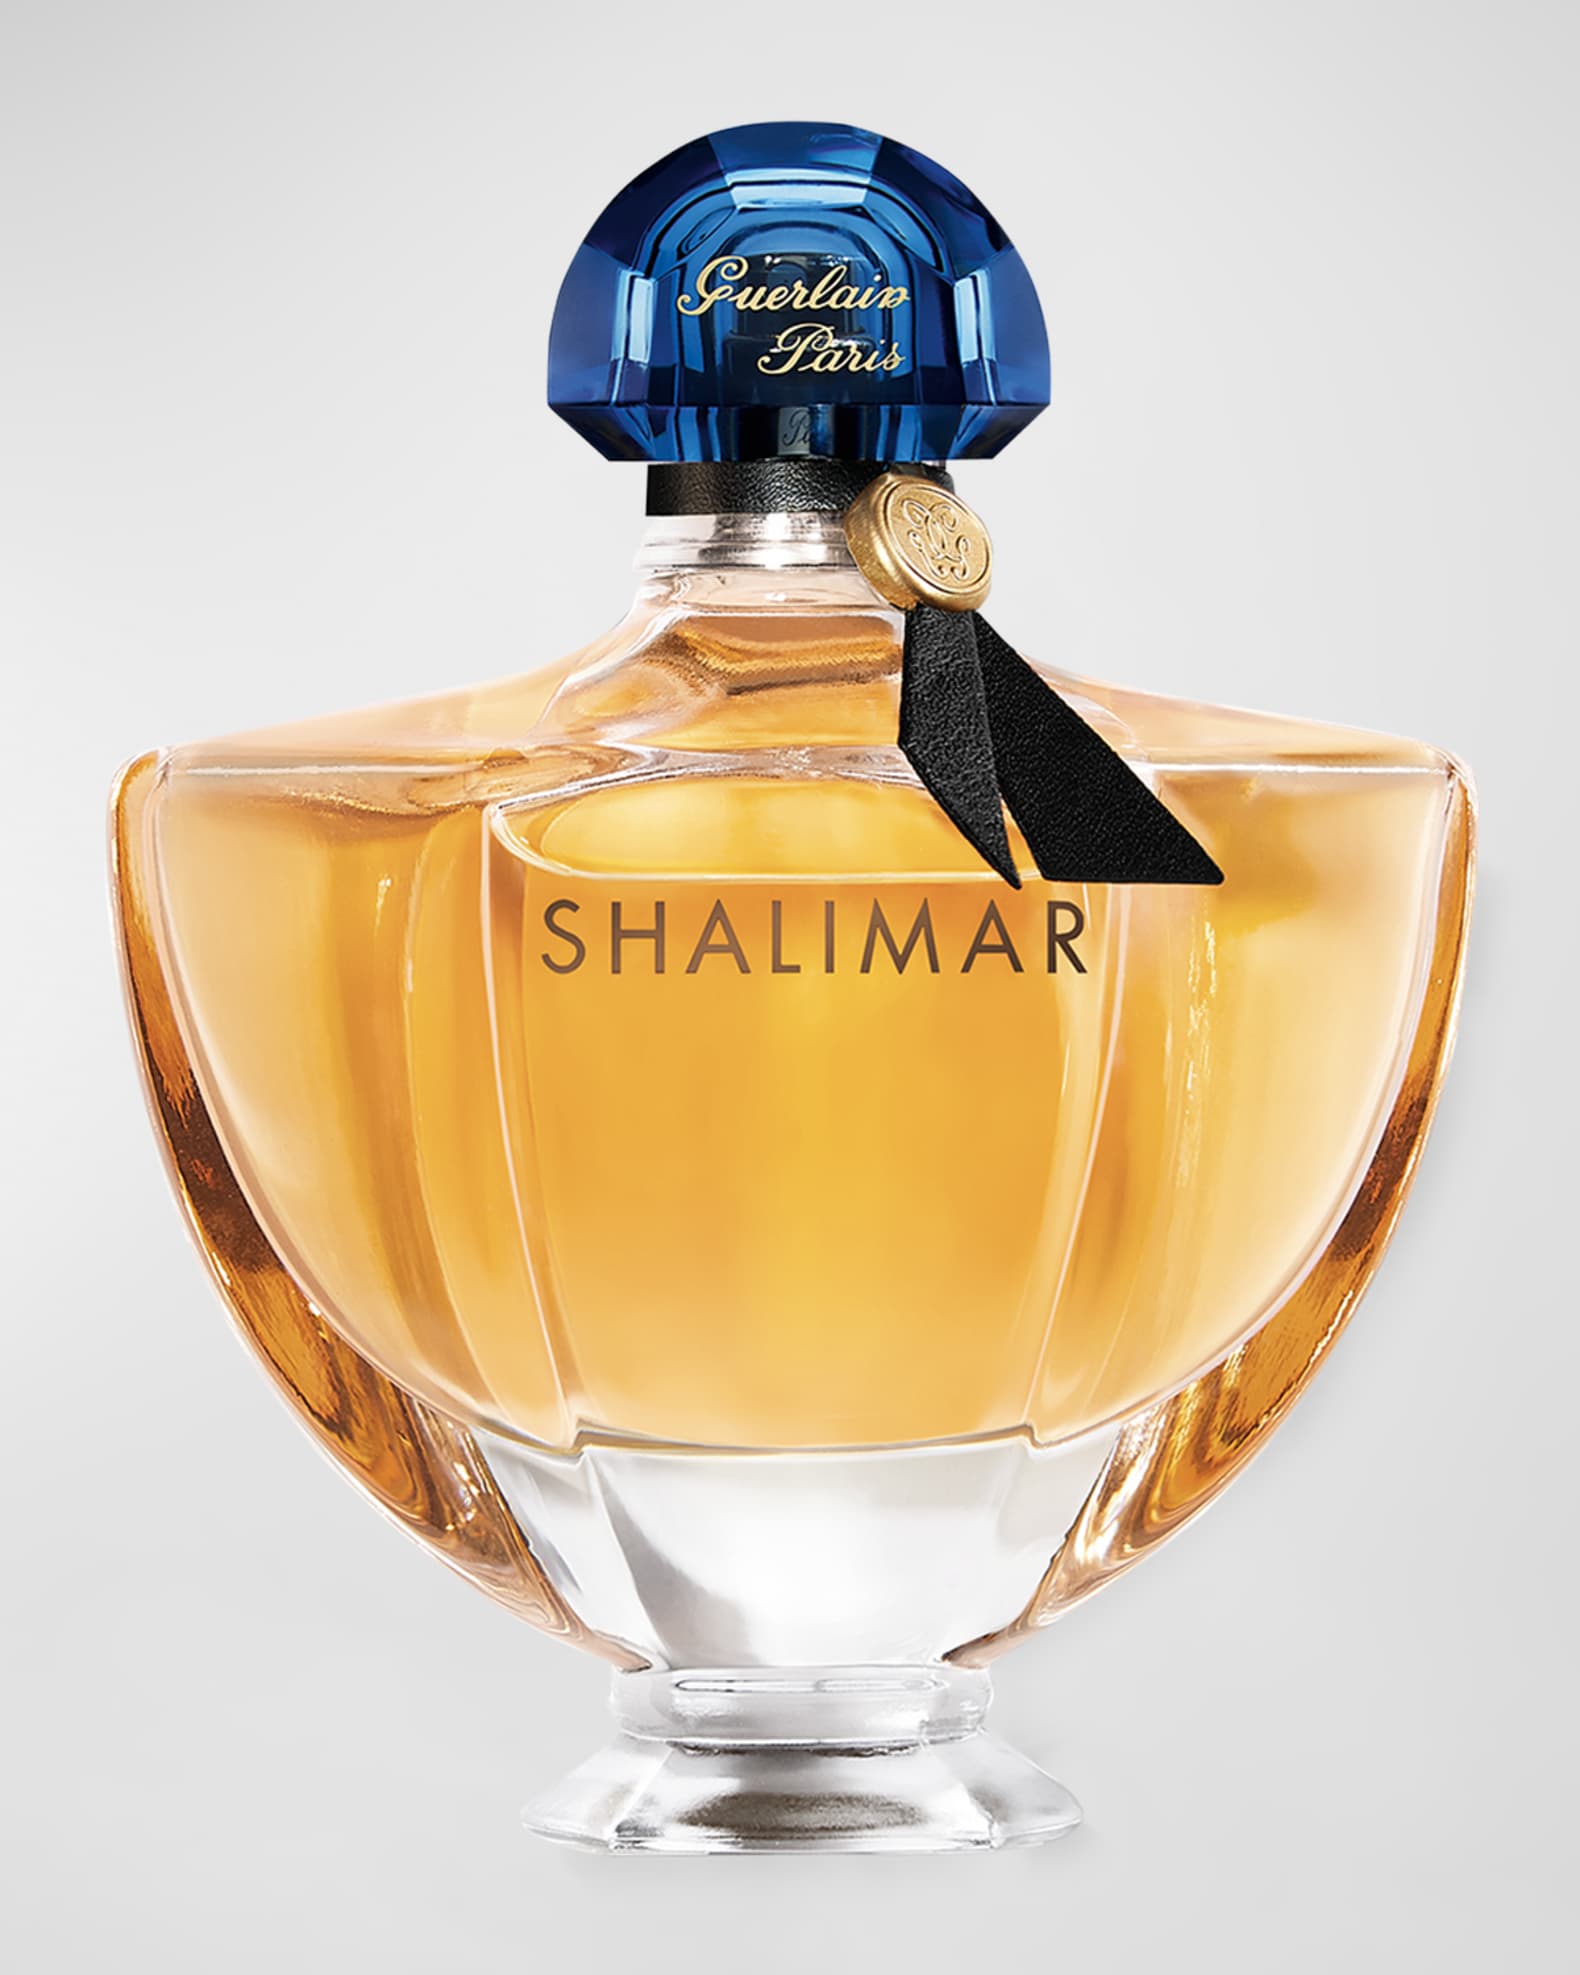 Guerlain Shalimar Women's EDP Perfume Spray - 3.0 fl oz bottle